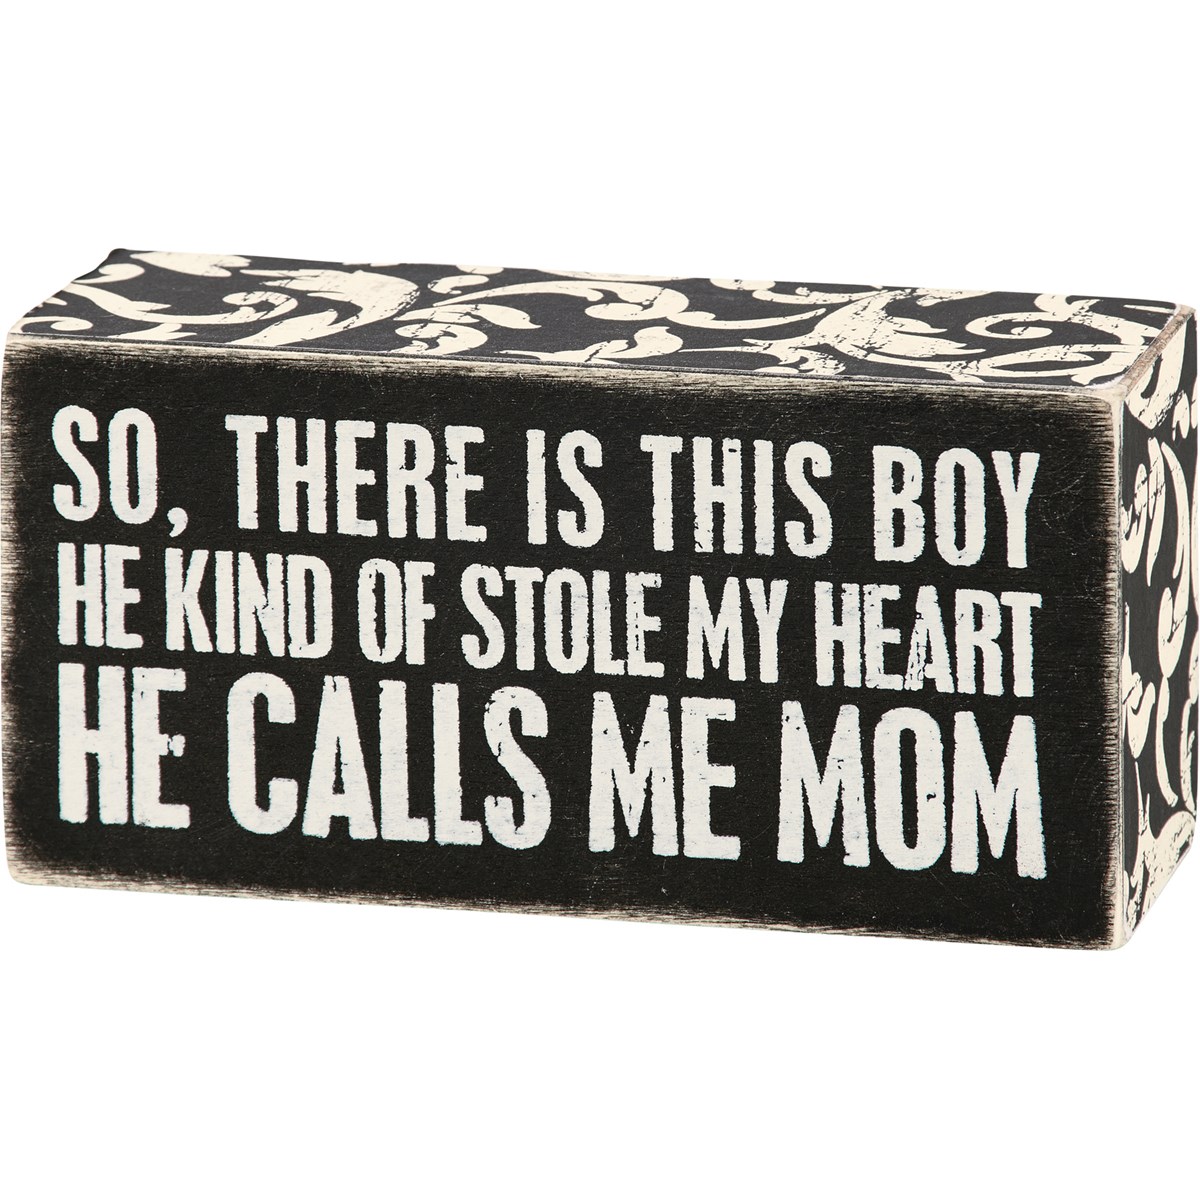 Box Sign - Calls Me Mom - 5" x 2.50" x 1.75" - Wood, Paper